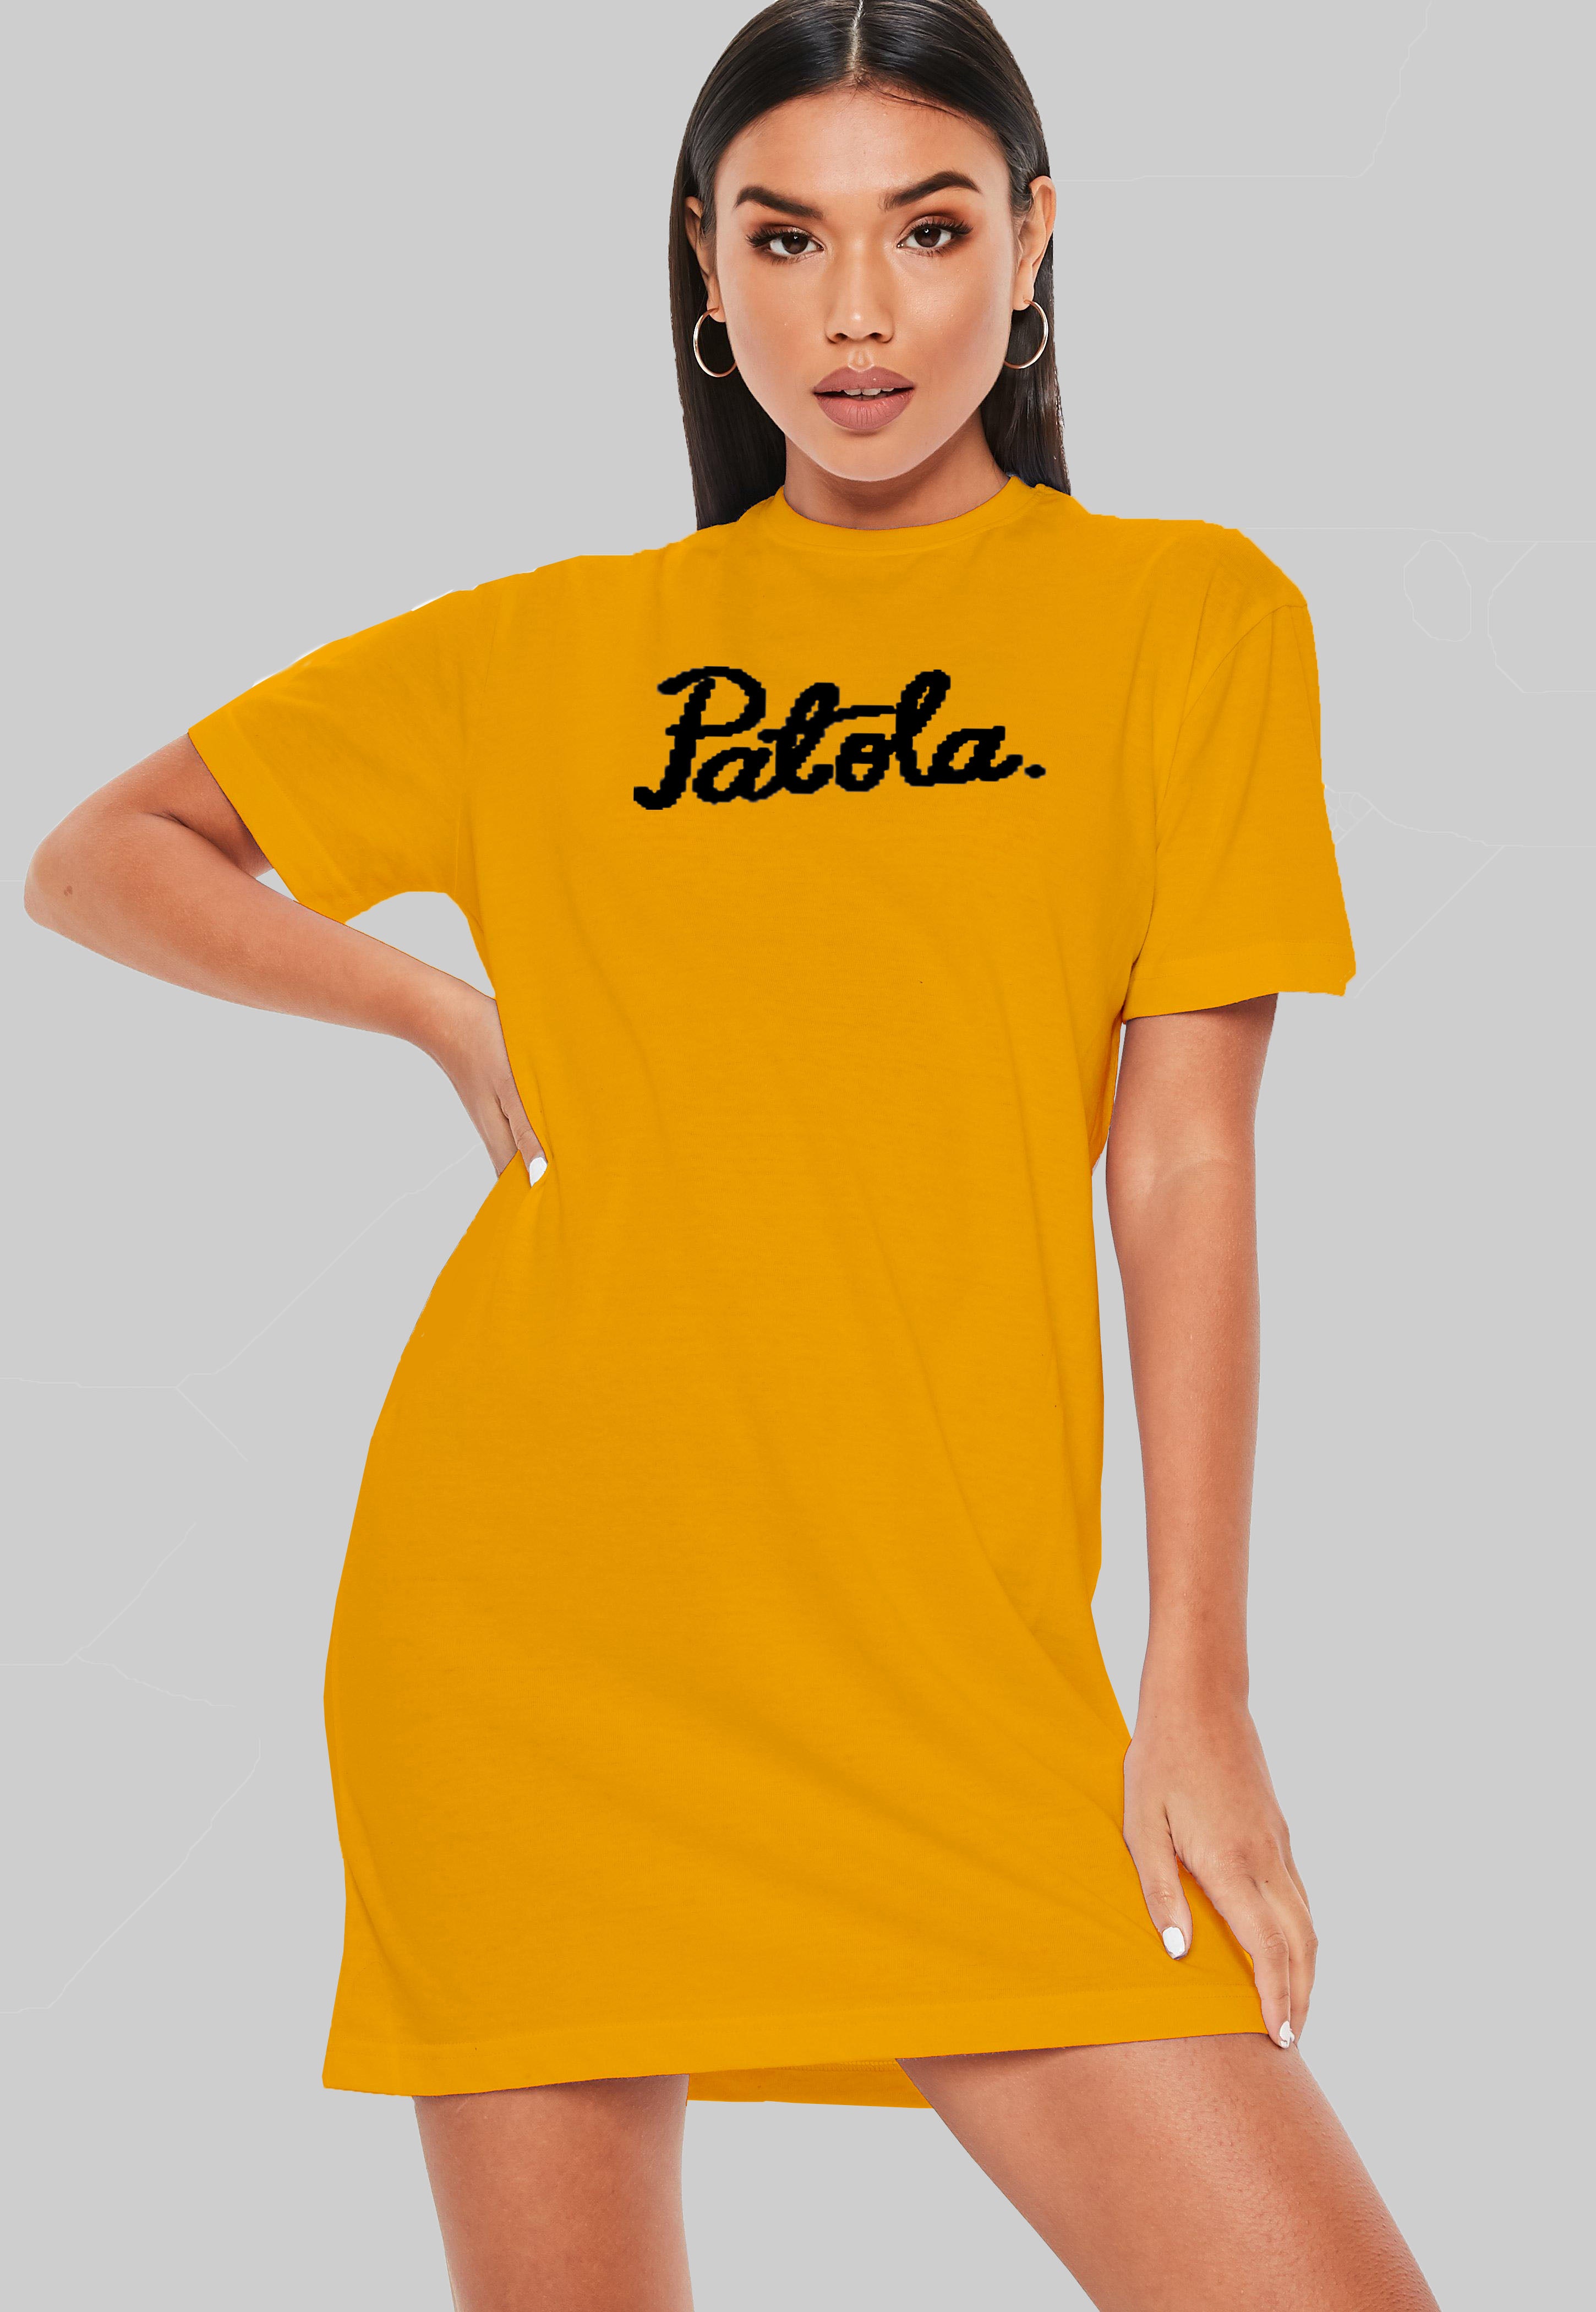 Patola T-Shirt Dress